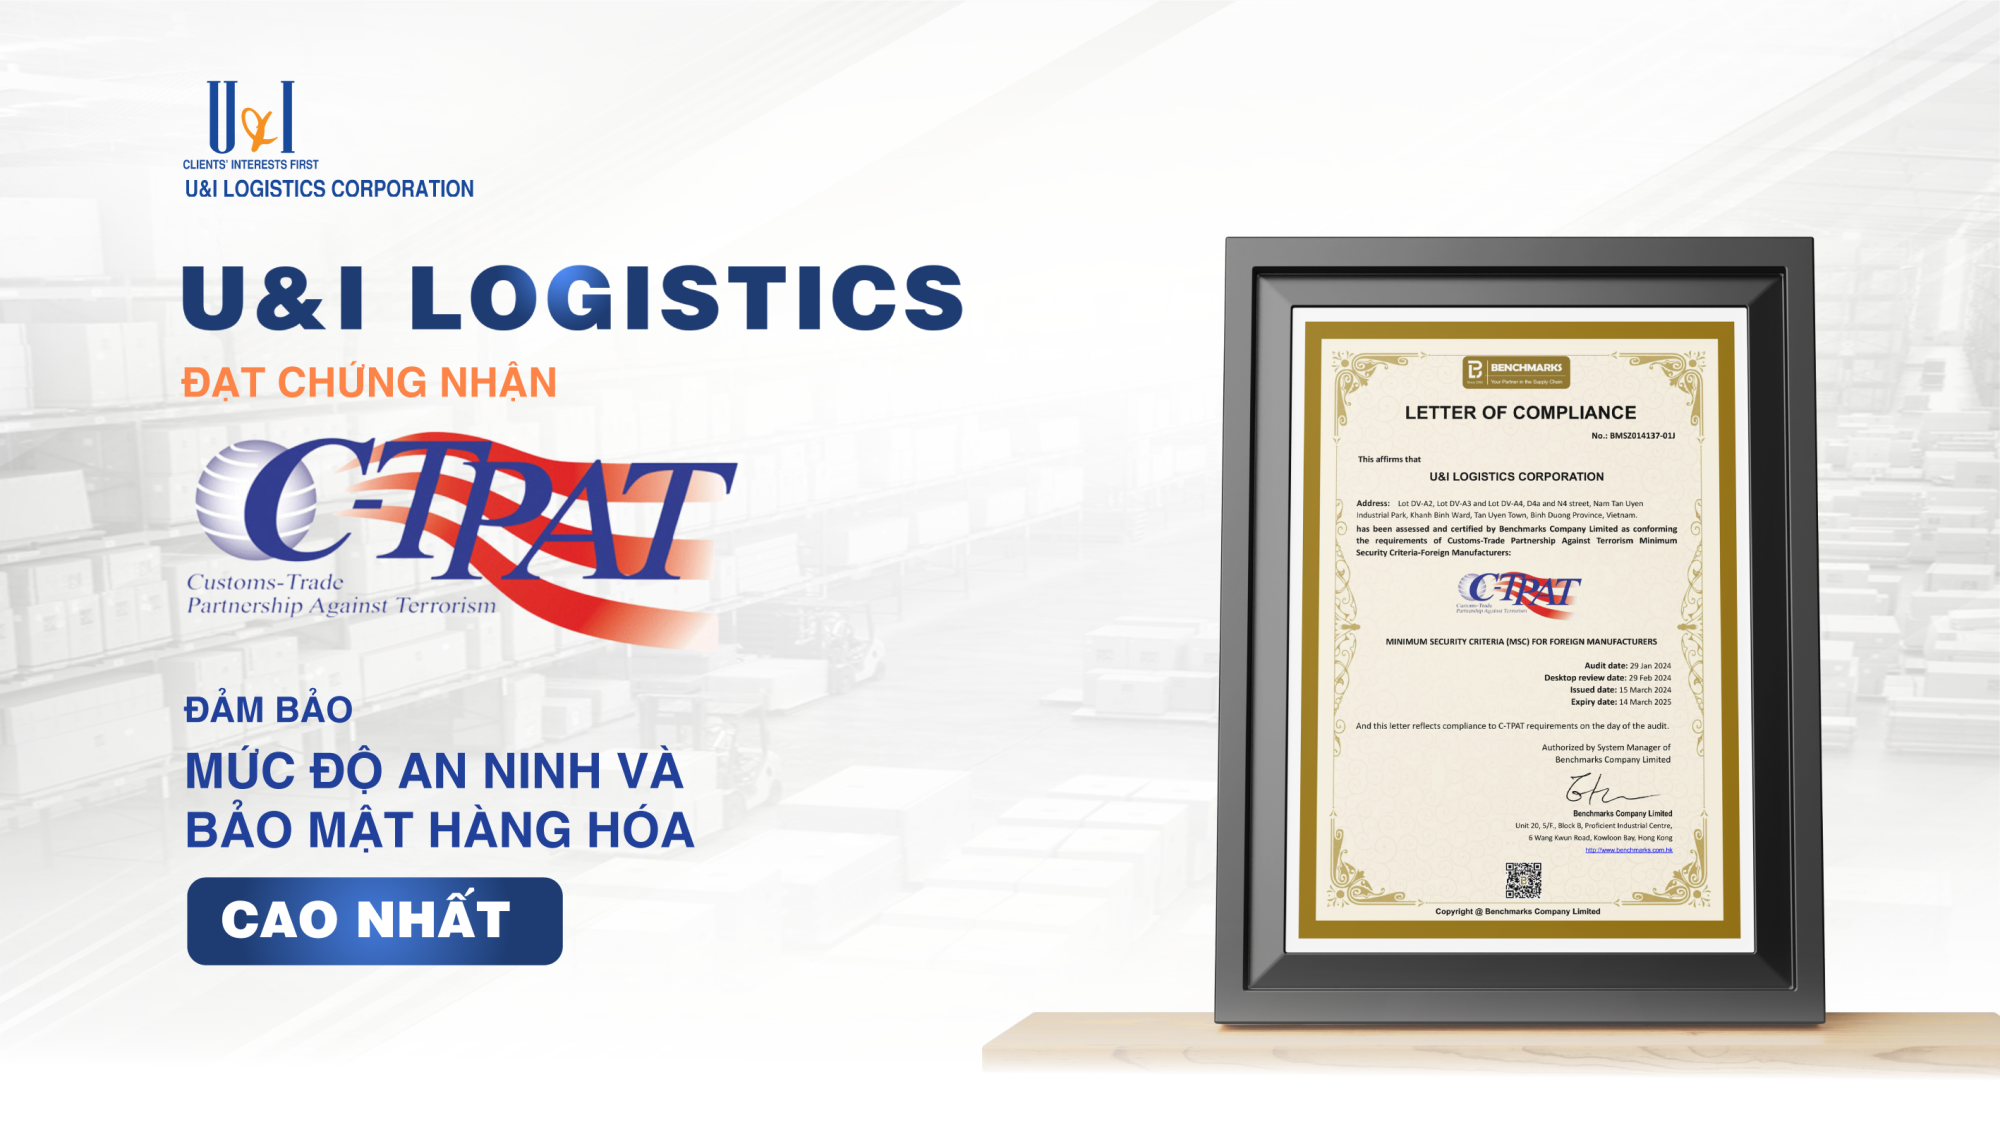 U&I Logistics đạt chứng nhận C-TPAT, đảm bảo an ninh và bảo mật tuyệt đối cho hàng hóa của khách hàng